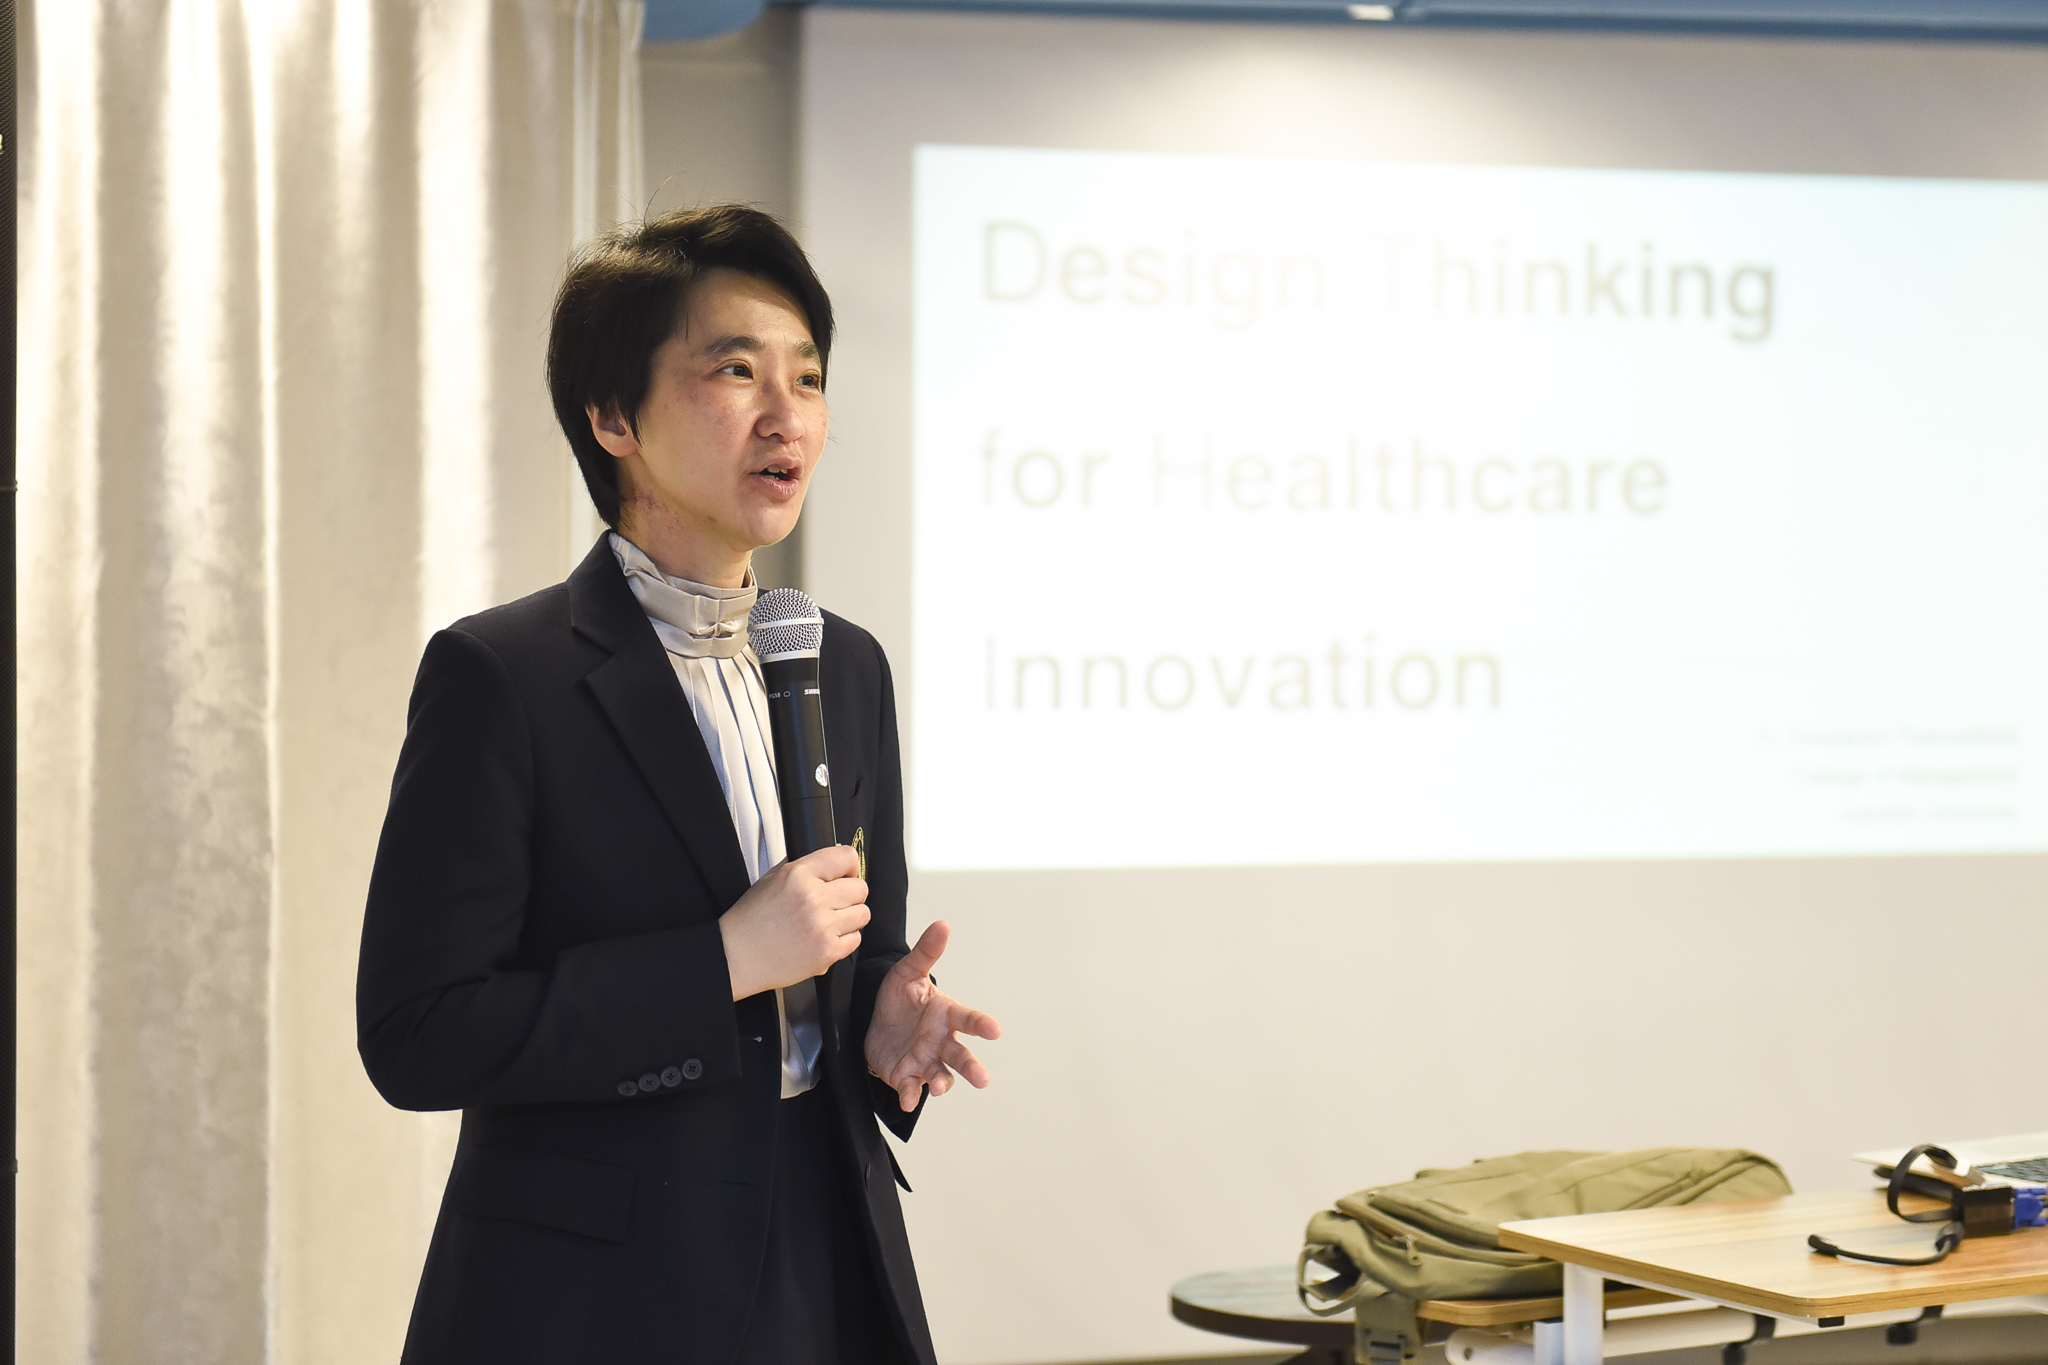 อบรม “Design Thinking for Healthcare Innovation”